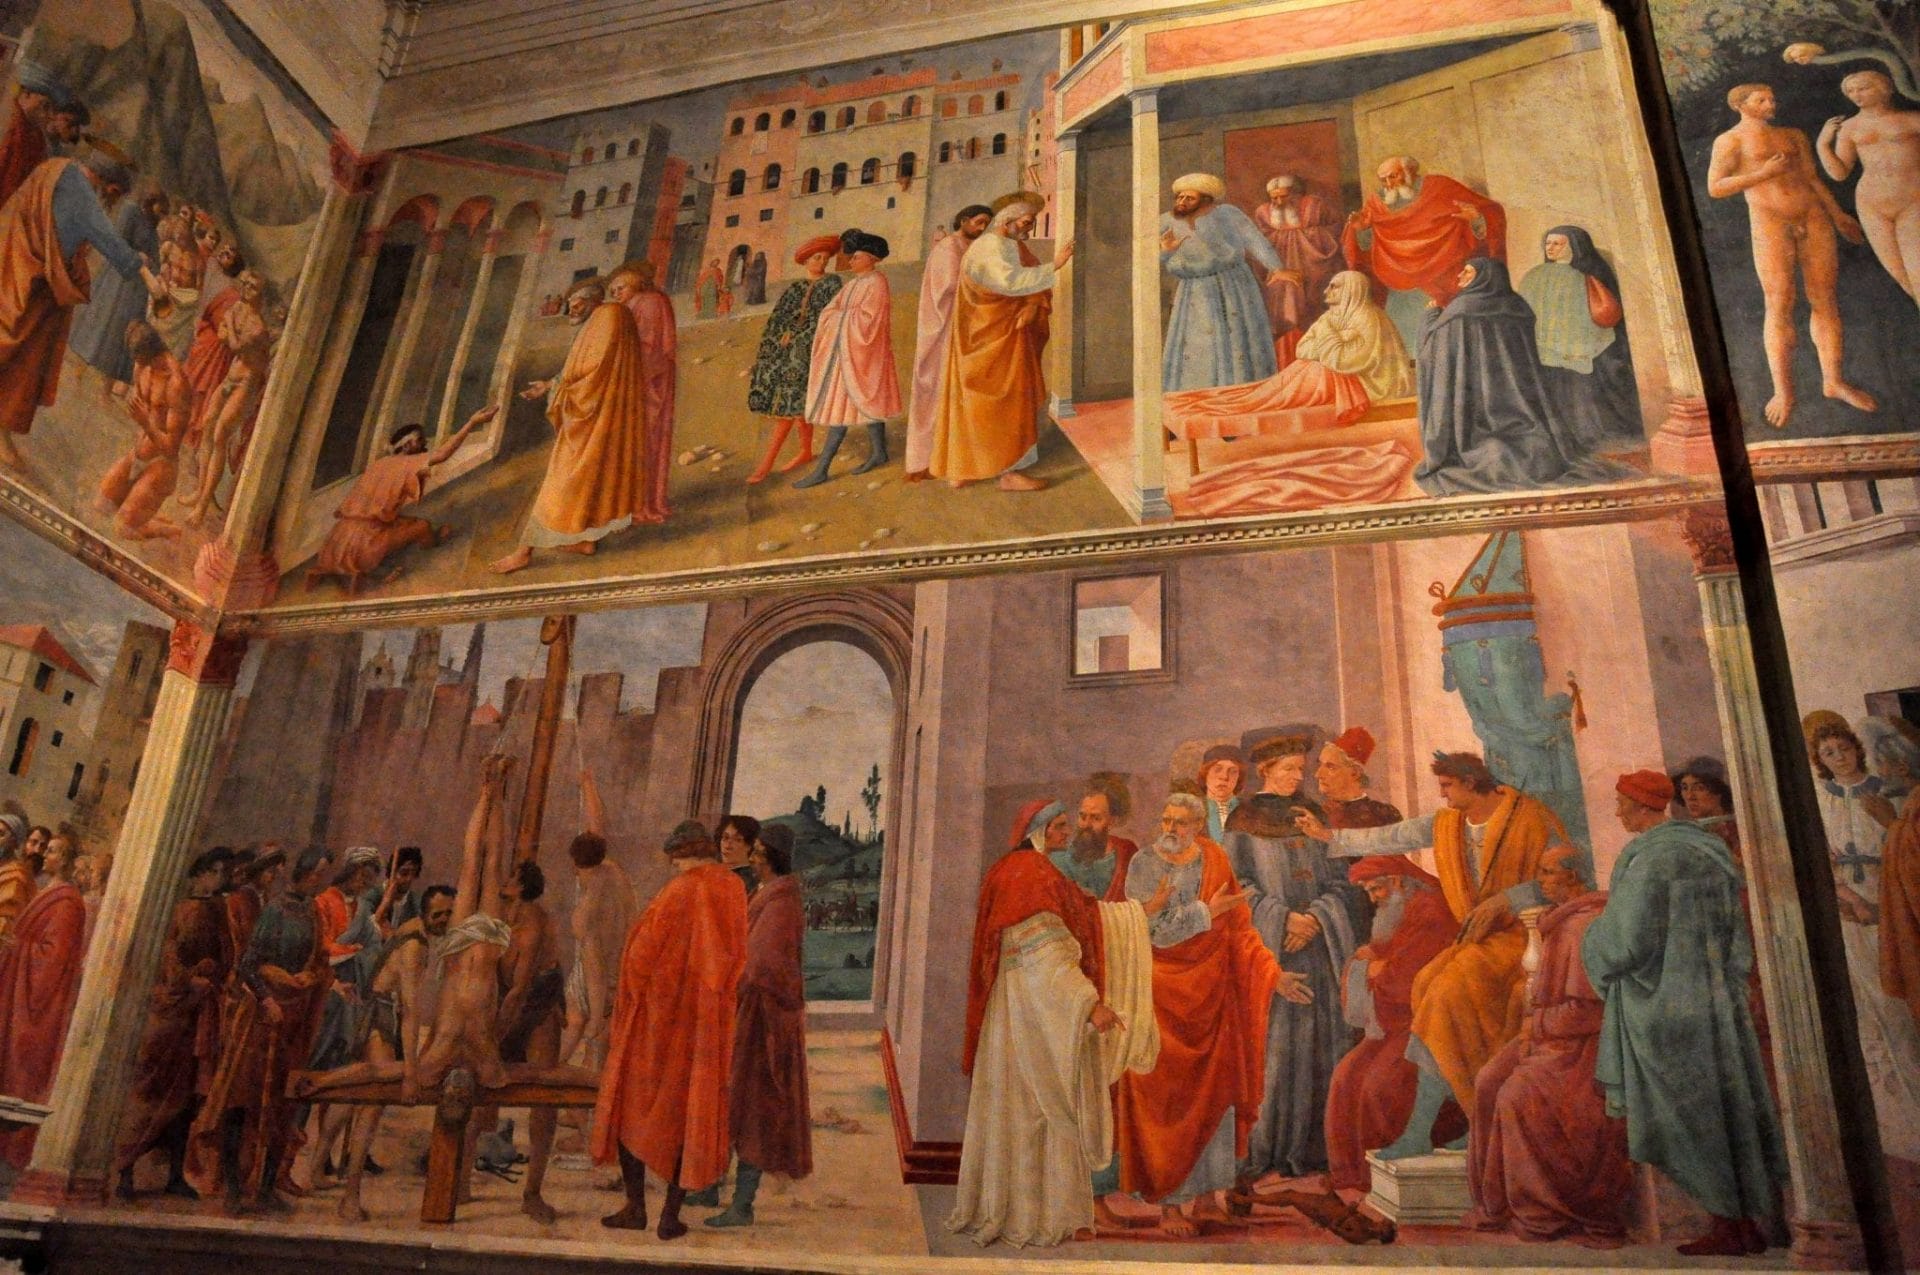 Masaccio frescoes in the Brancacci Chapel